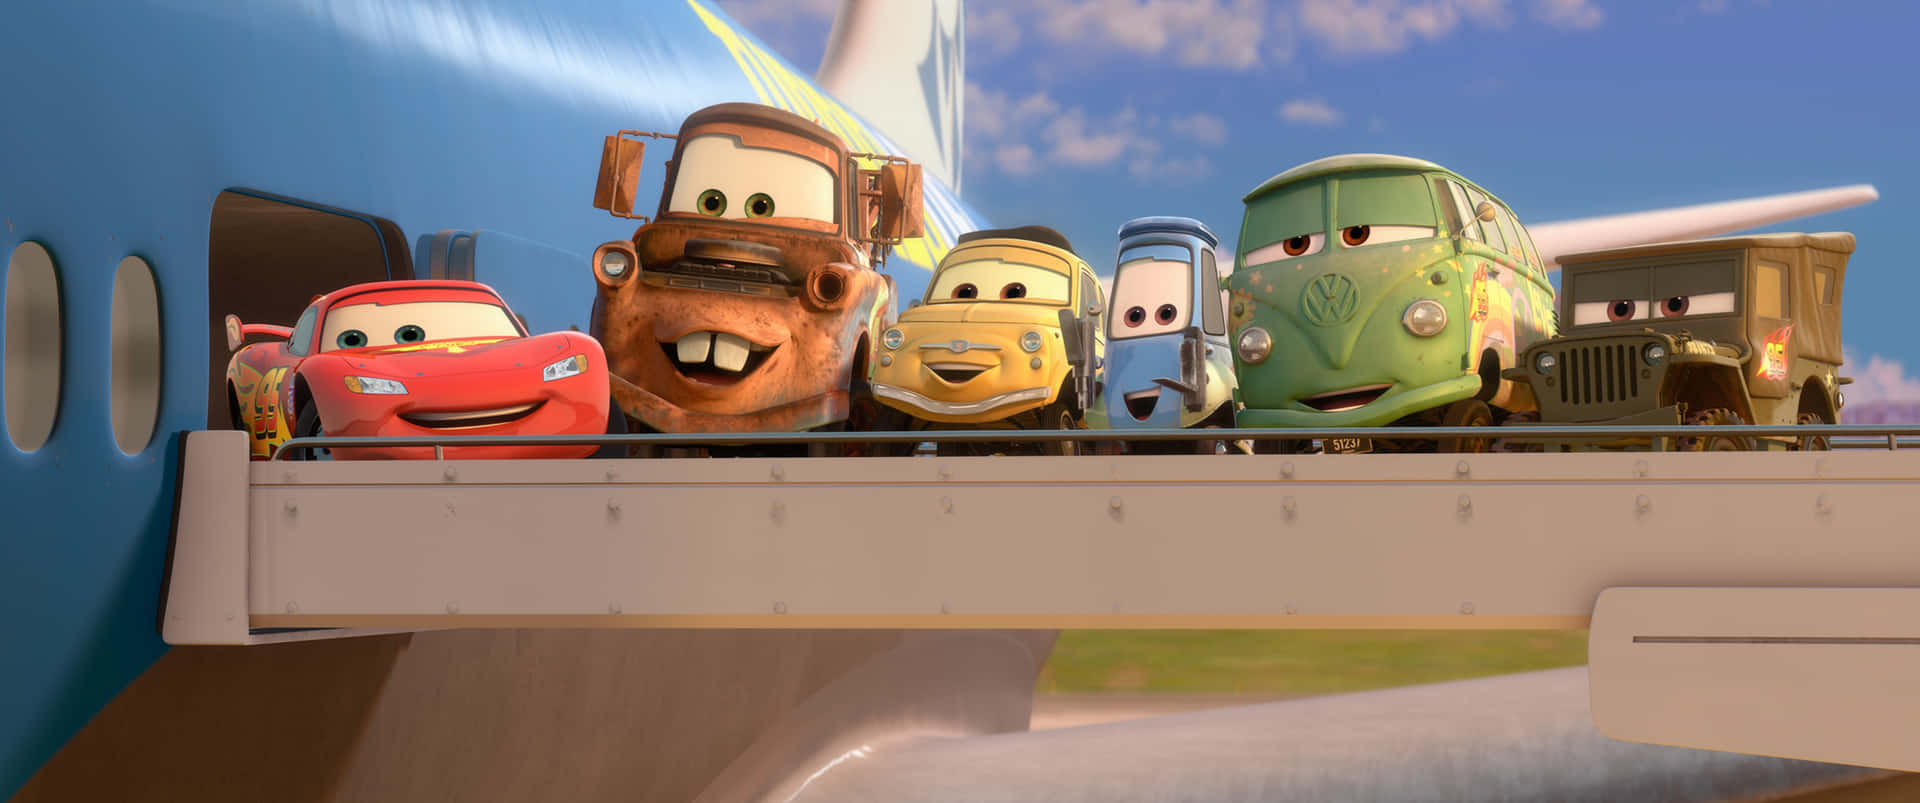 Relâmpagomcqueen E Mater Do Filme Carros 2 Da Disney-pixar.